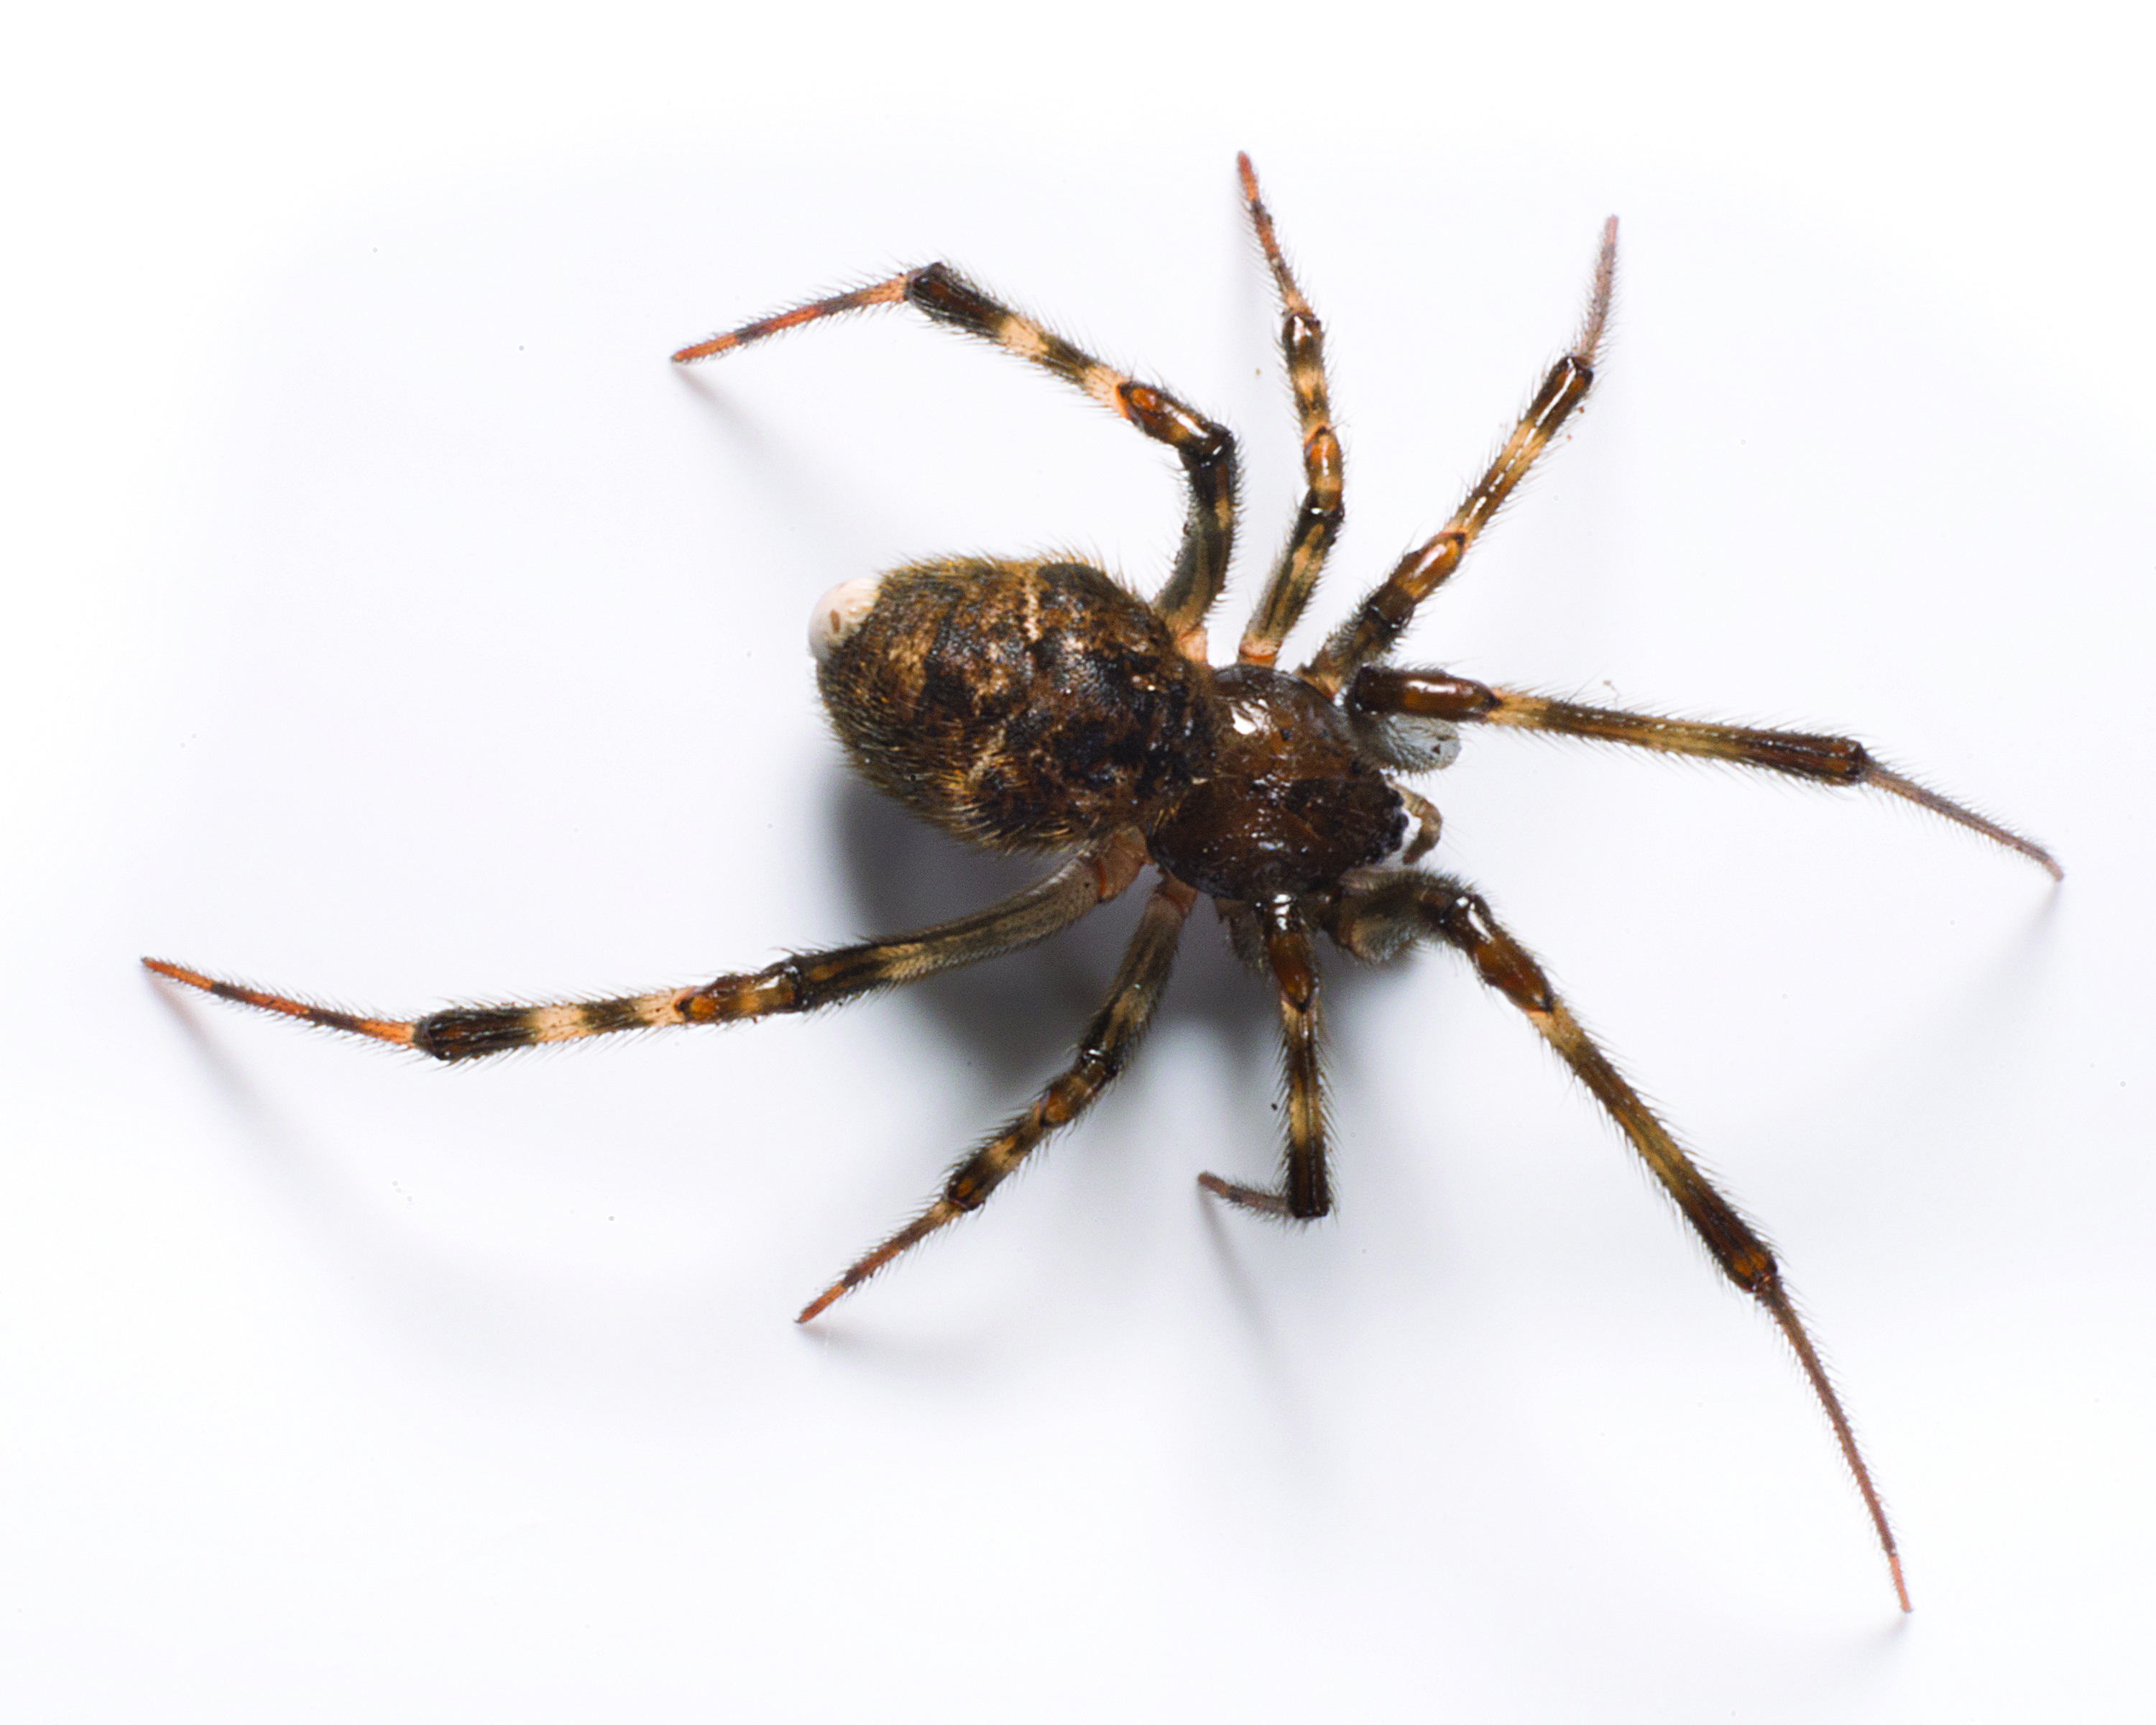 Spiders pictures. Parasteatoda tepidariorum. Домашние пауки. Паук коричневый домашний. Пауки обычные домашние.